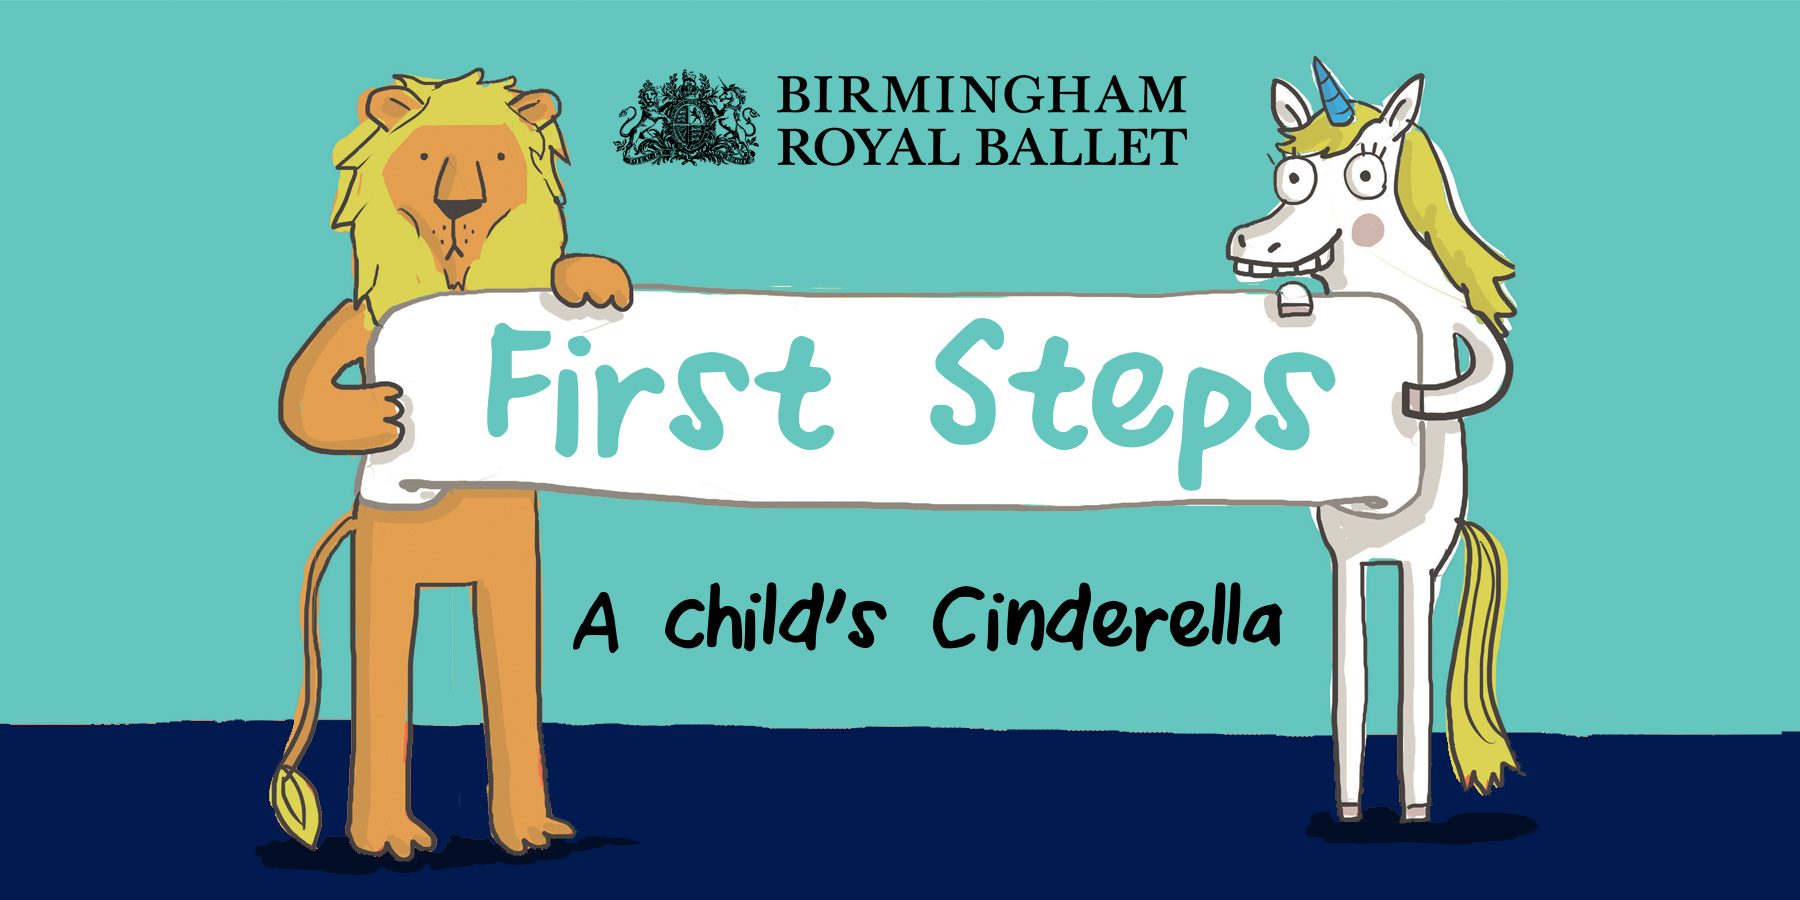 First Steps Cinderella